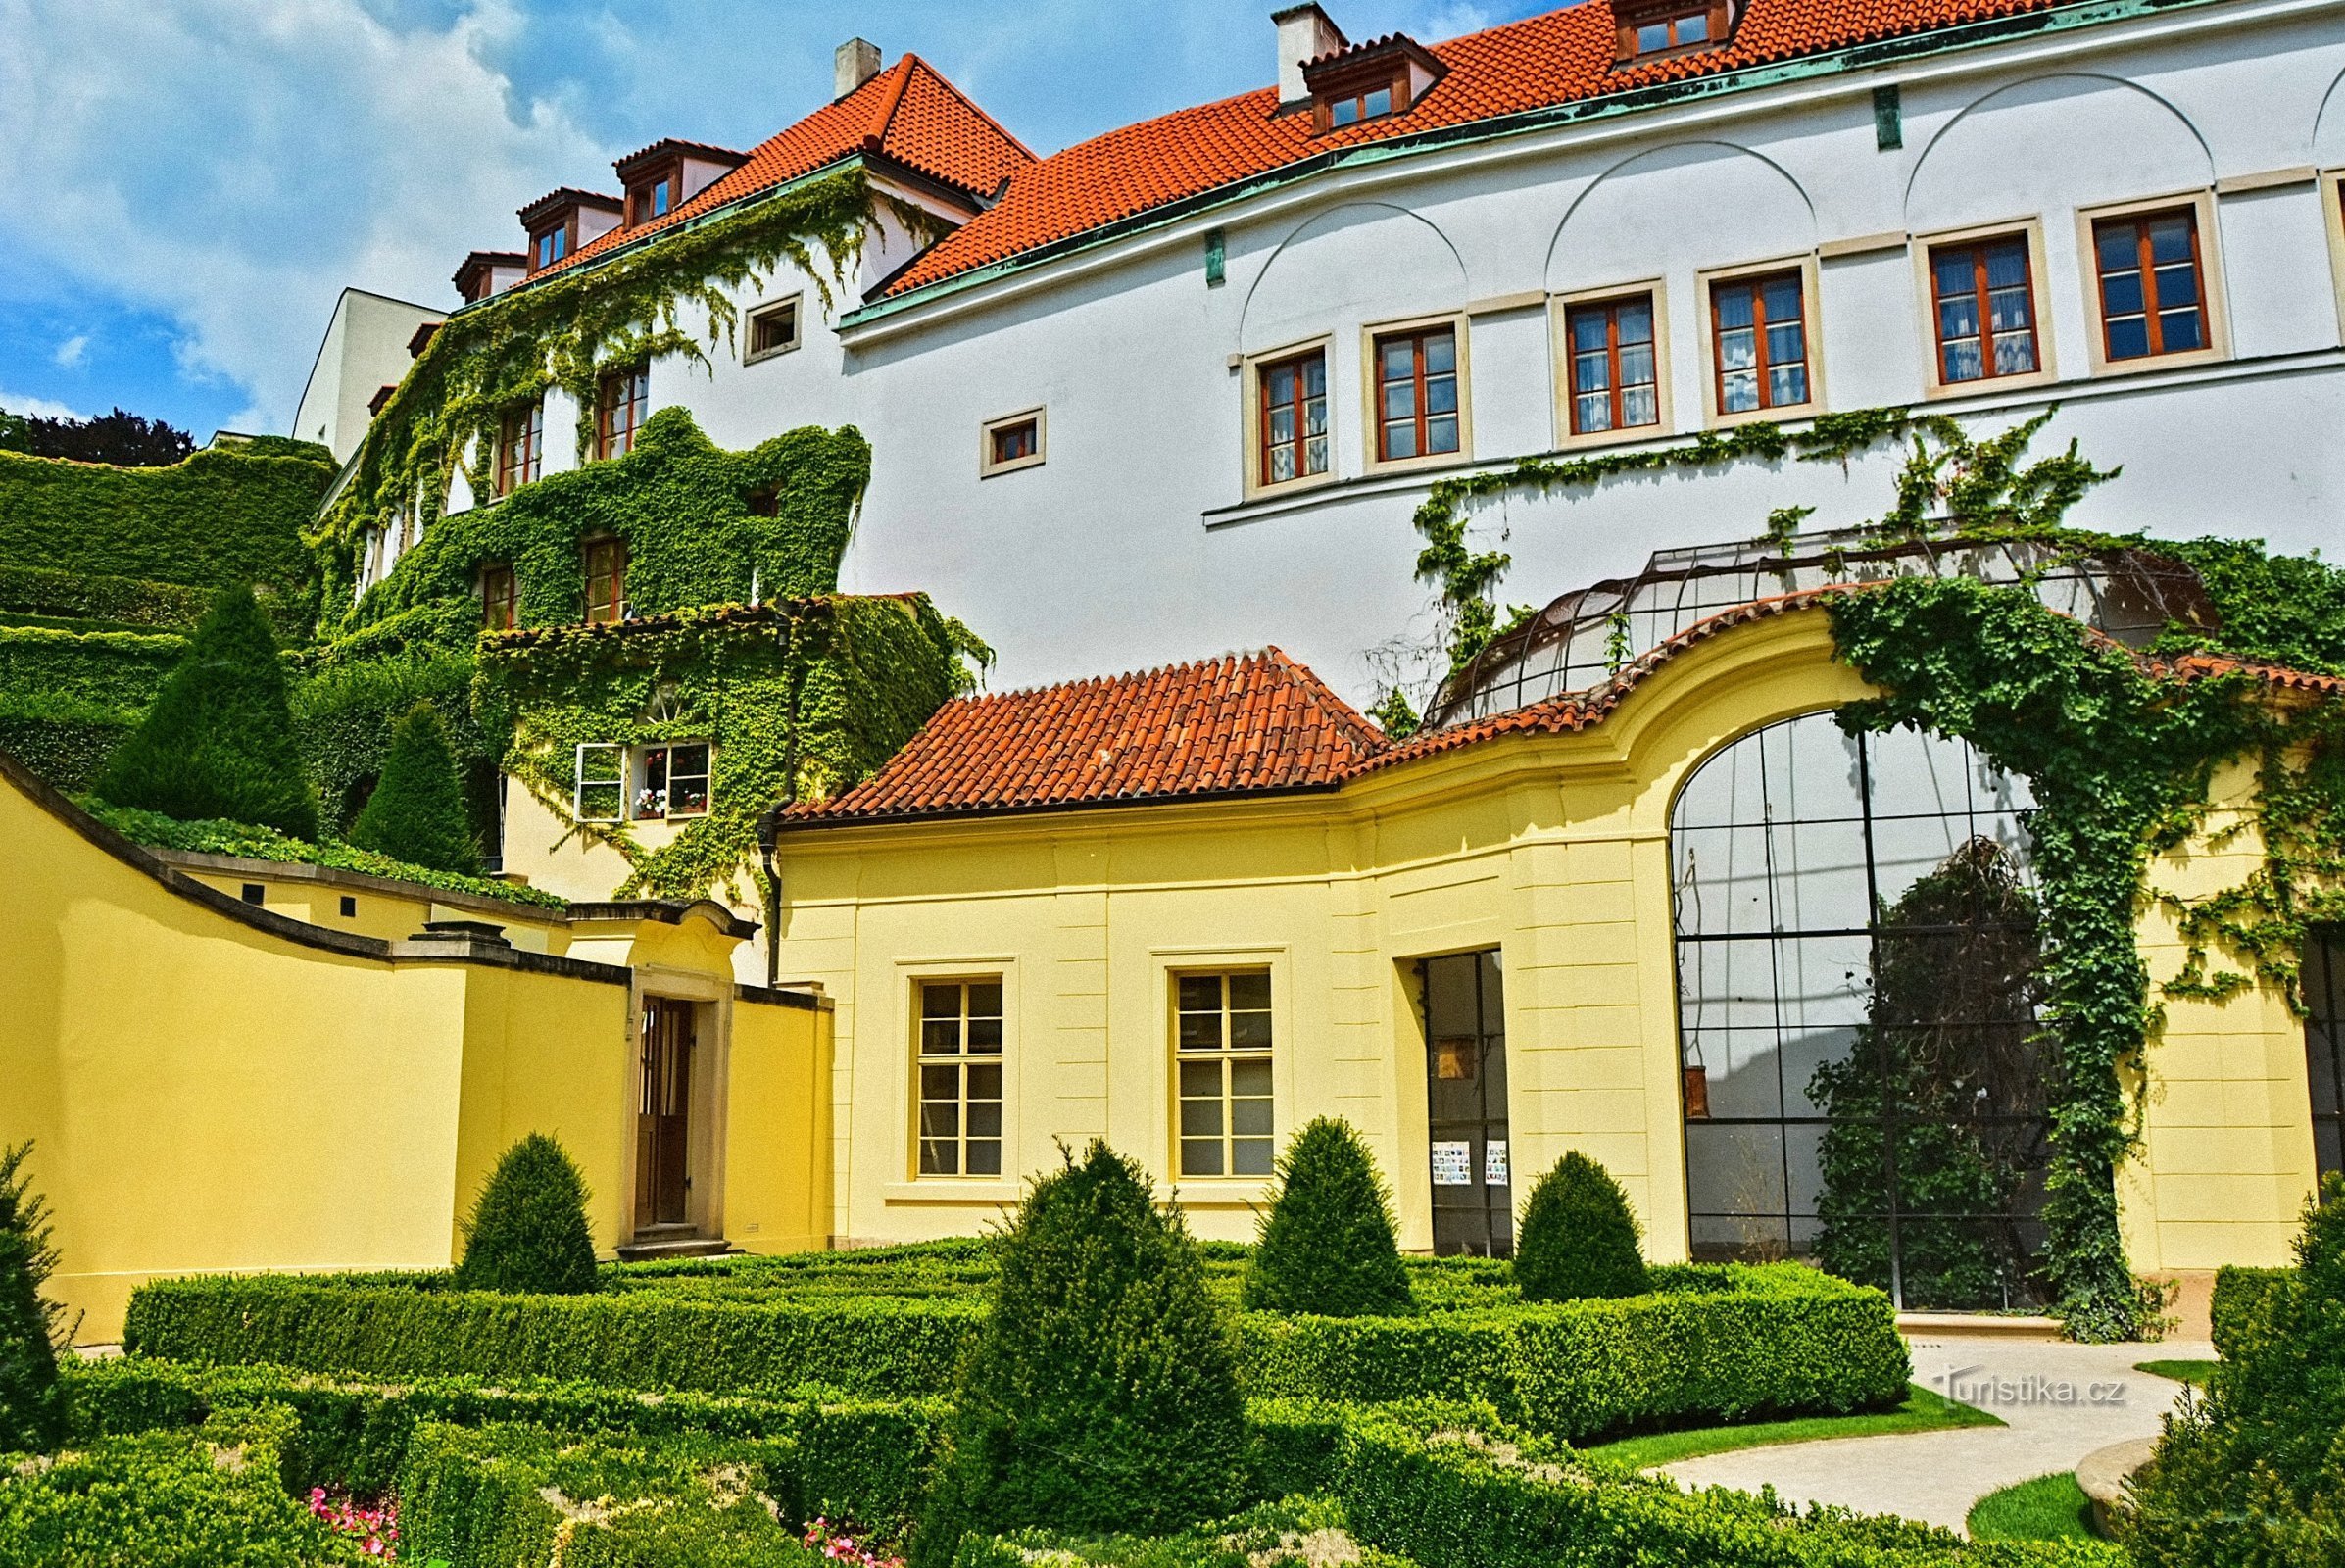 Jardin Vrtbovská avec une belle vue sur Prague